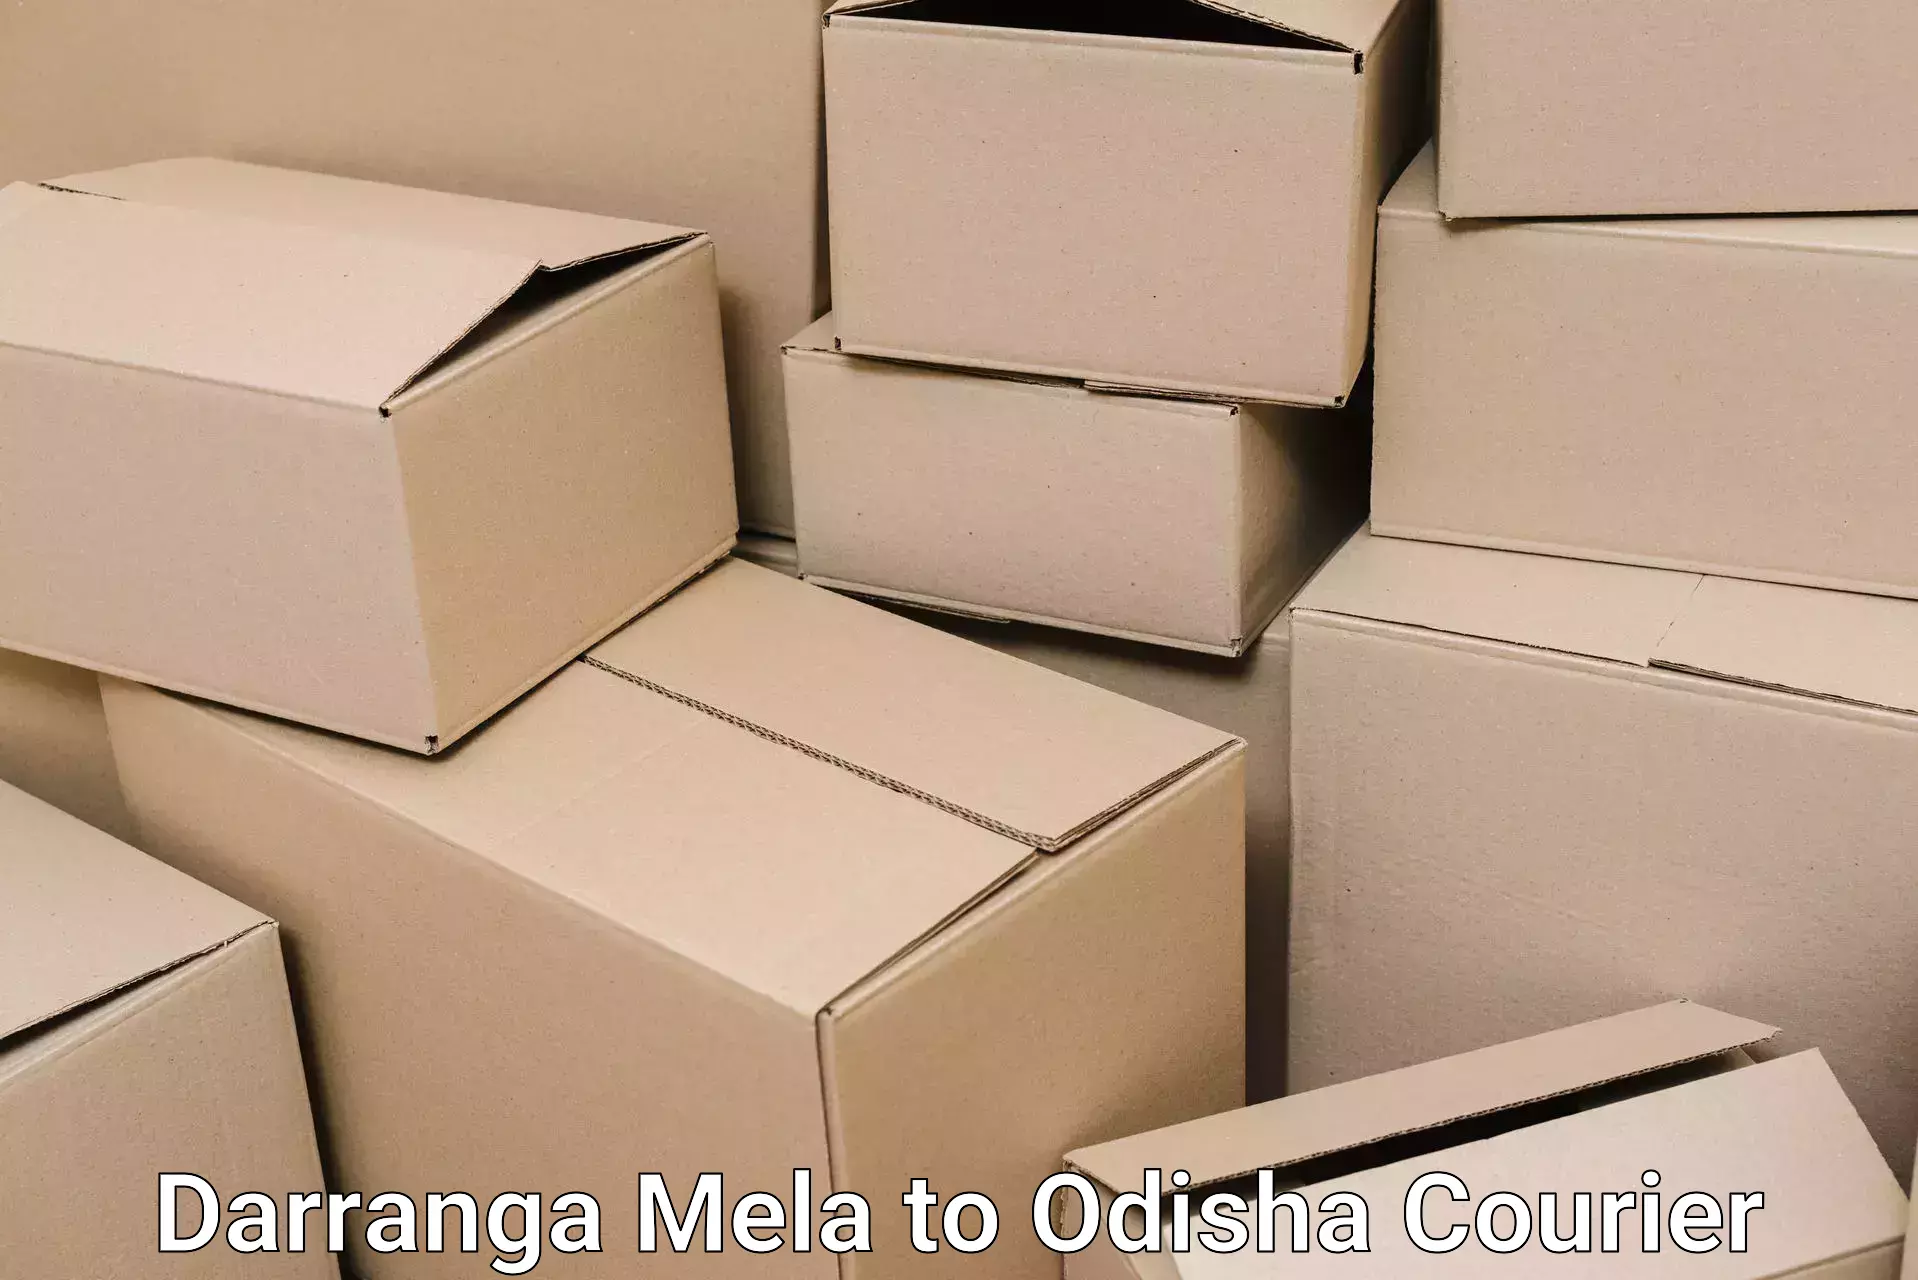 Furniture delivery service Darranga Mela to Odisha